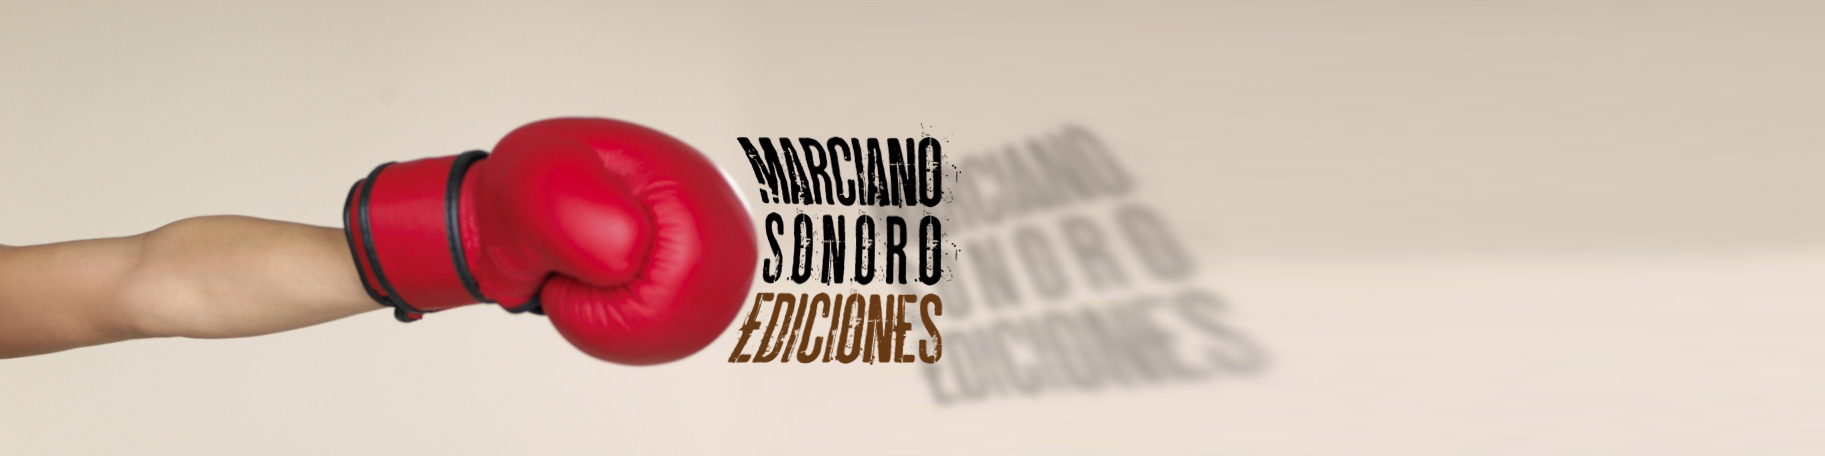 Marciano Sonoro Ediciones. Libros y música